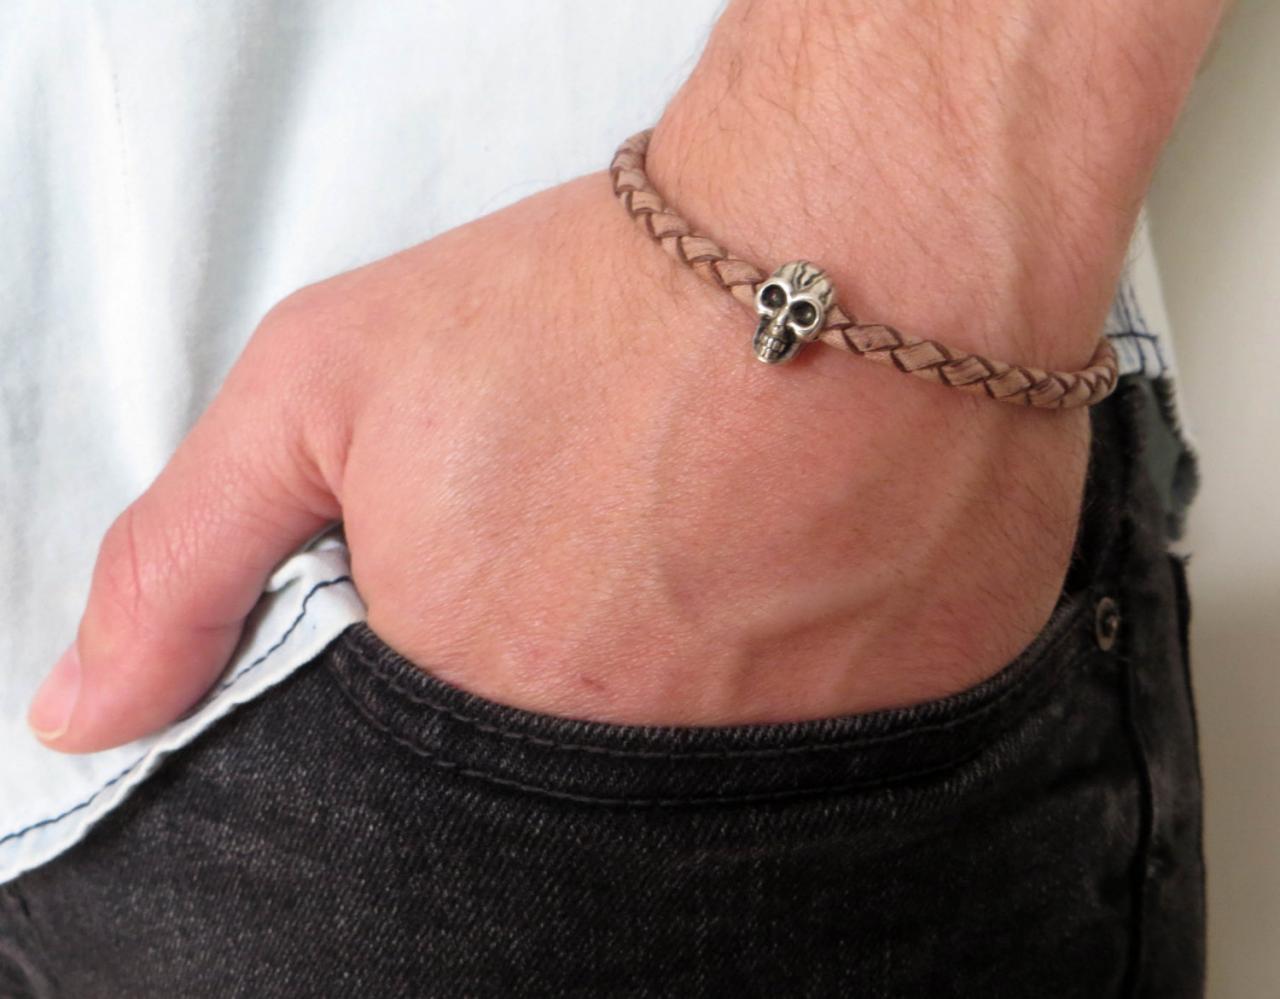 Men's Bracelet - Men's Skull Bracelet - Men's Cuff Bracelet - Men's Leather Bracelet - Men's Jewelry